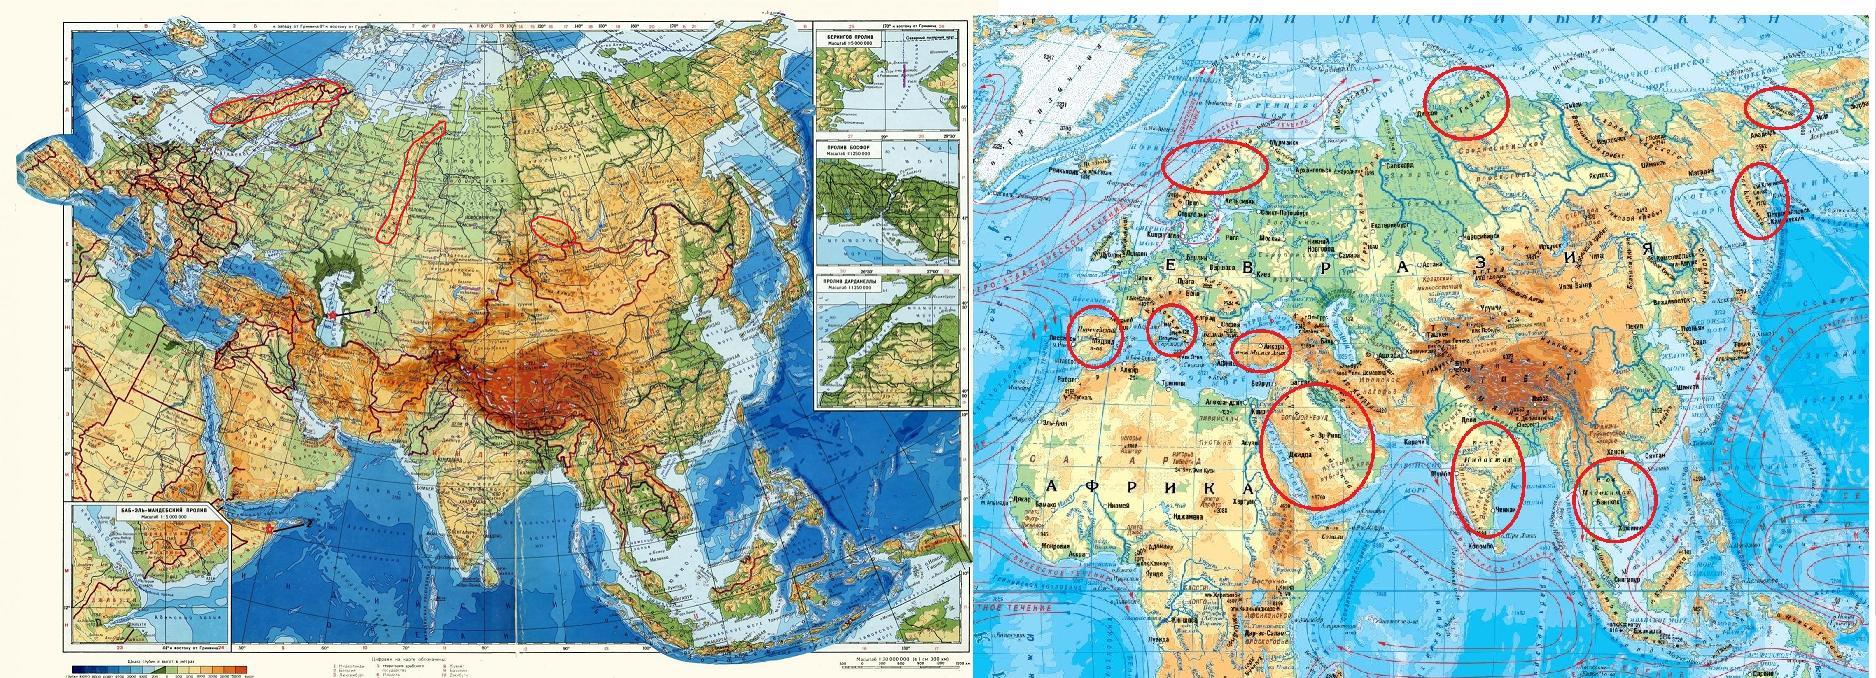 Озера на территории евразии. Евразия занимает. Граница Европы и Азии на карте Евразии. Какре место занимает Евразия по площади. Объединенная Евразия.